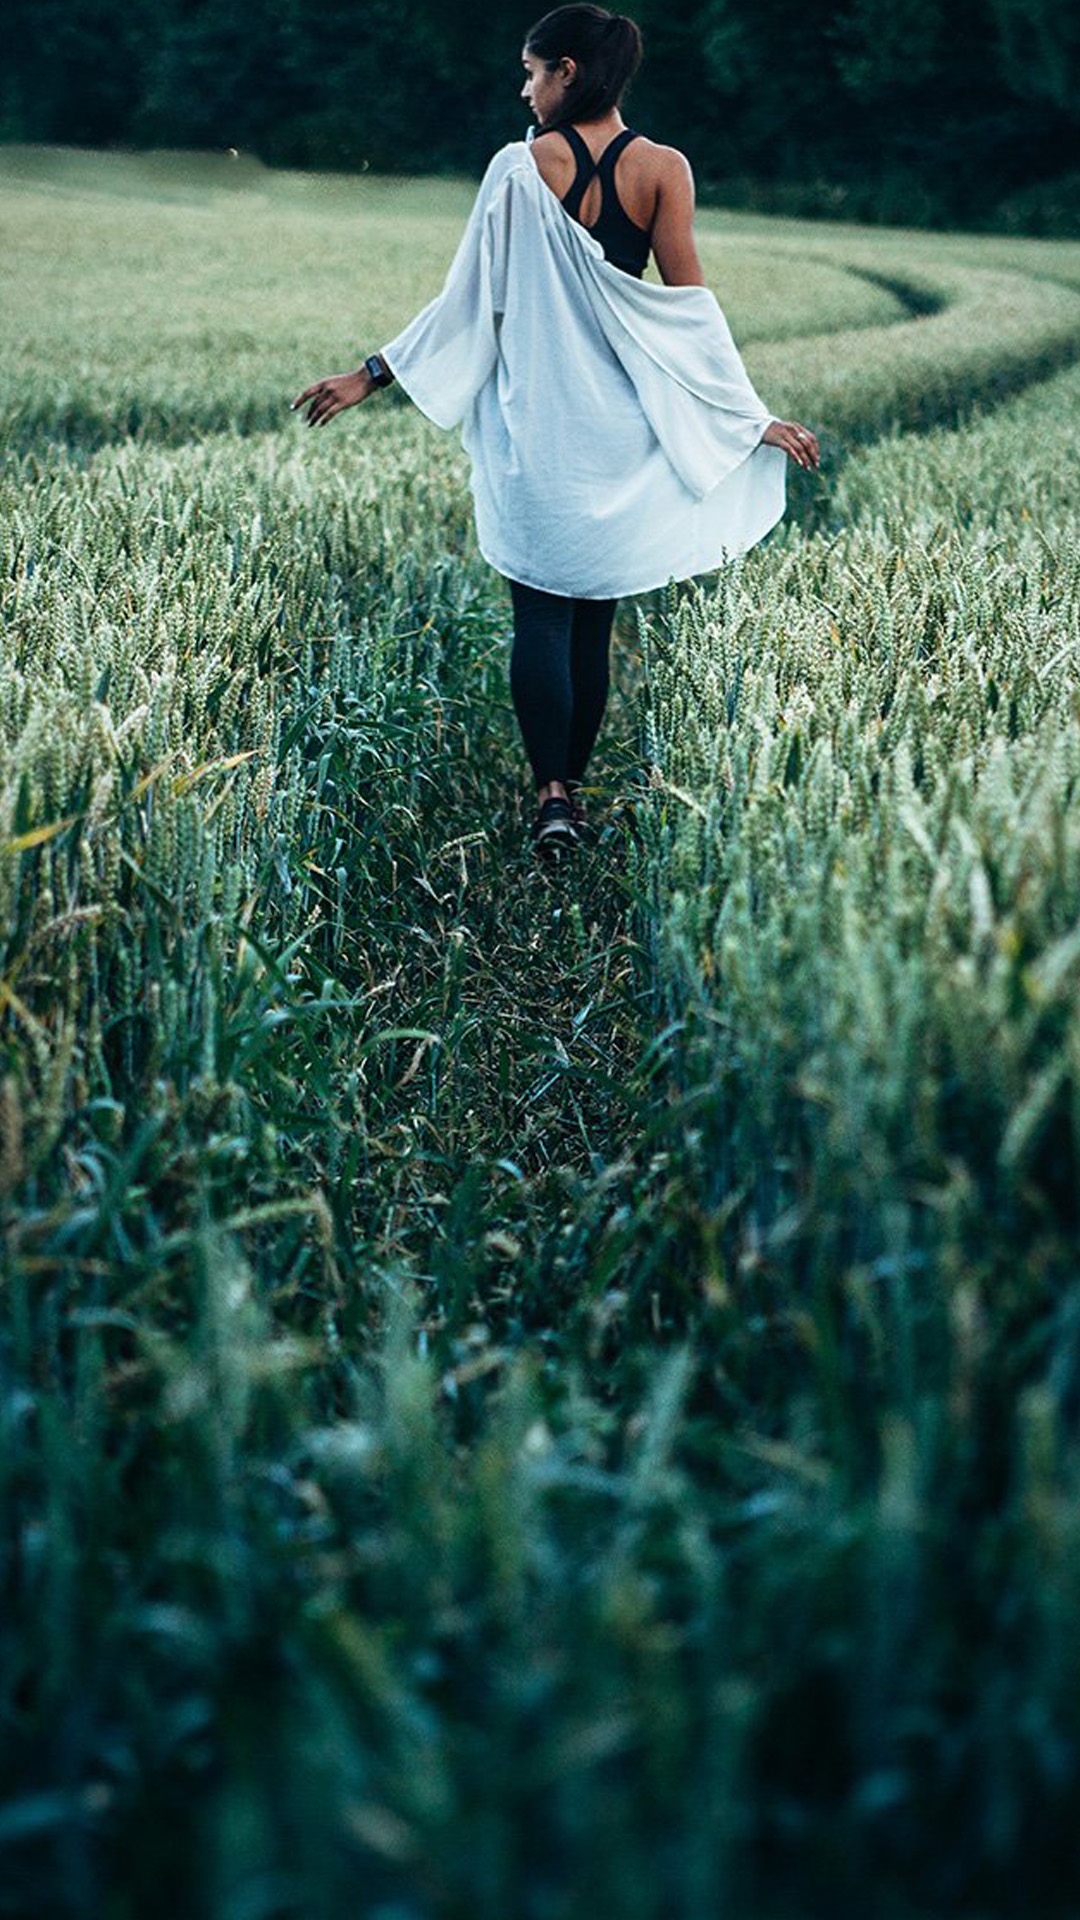 行走在玉米地的女孩